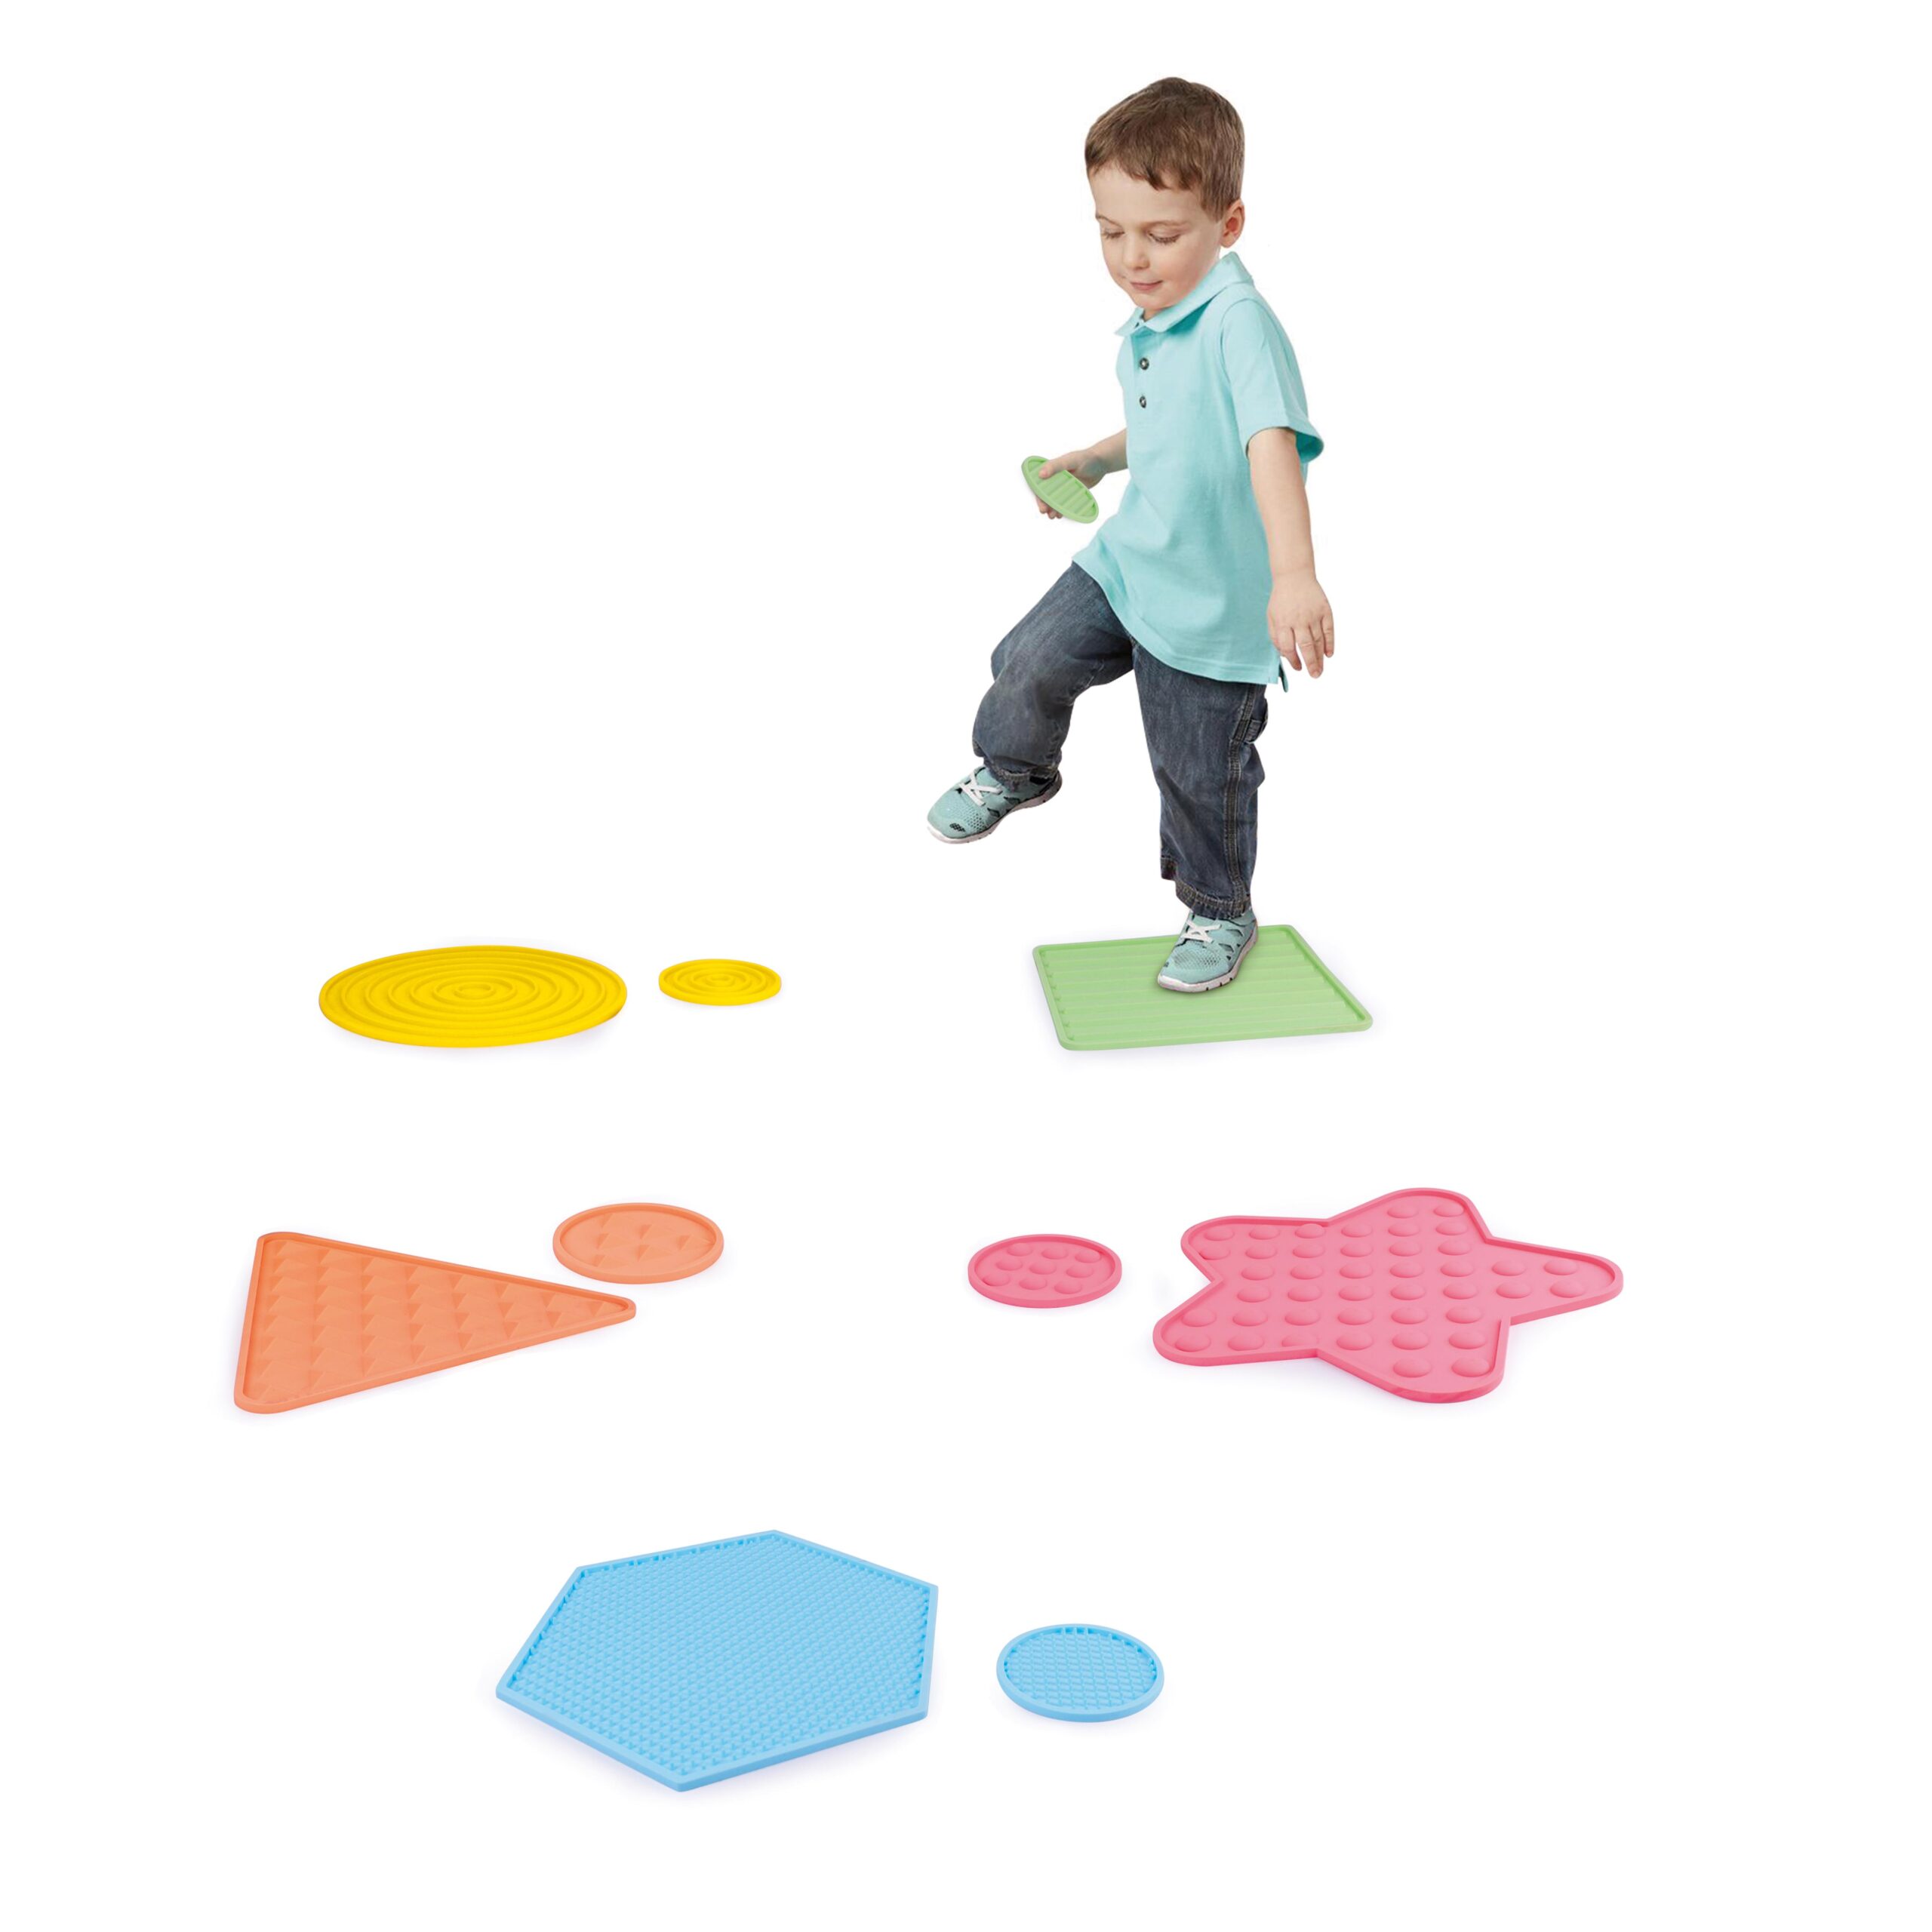 DIY-Lernspiele für Kinder: Sensorik-Matten - Hallo Eltern